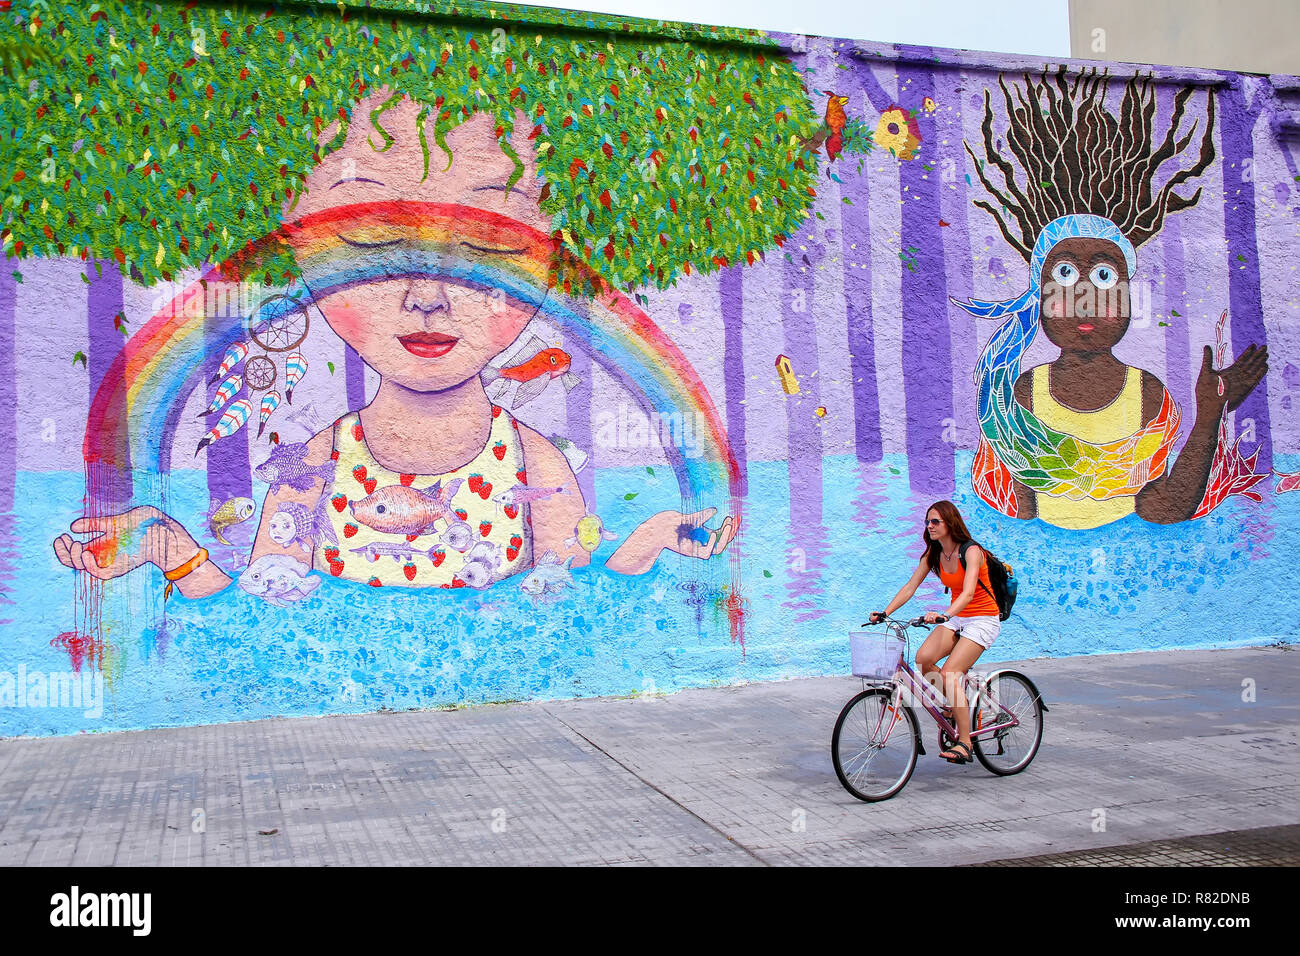 Jeune femme cycliste le long mur coloré à Montevideo, Uruguay. Montevideo est la capitale et la plus grande ville de l'Uruguay. Banque D'Images